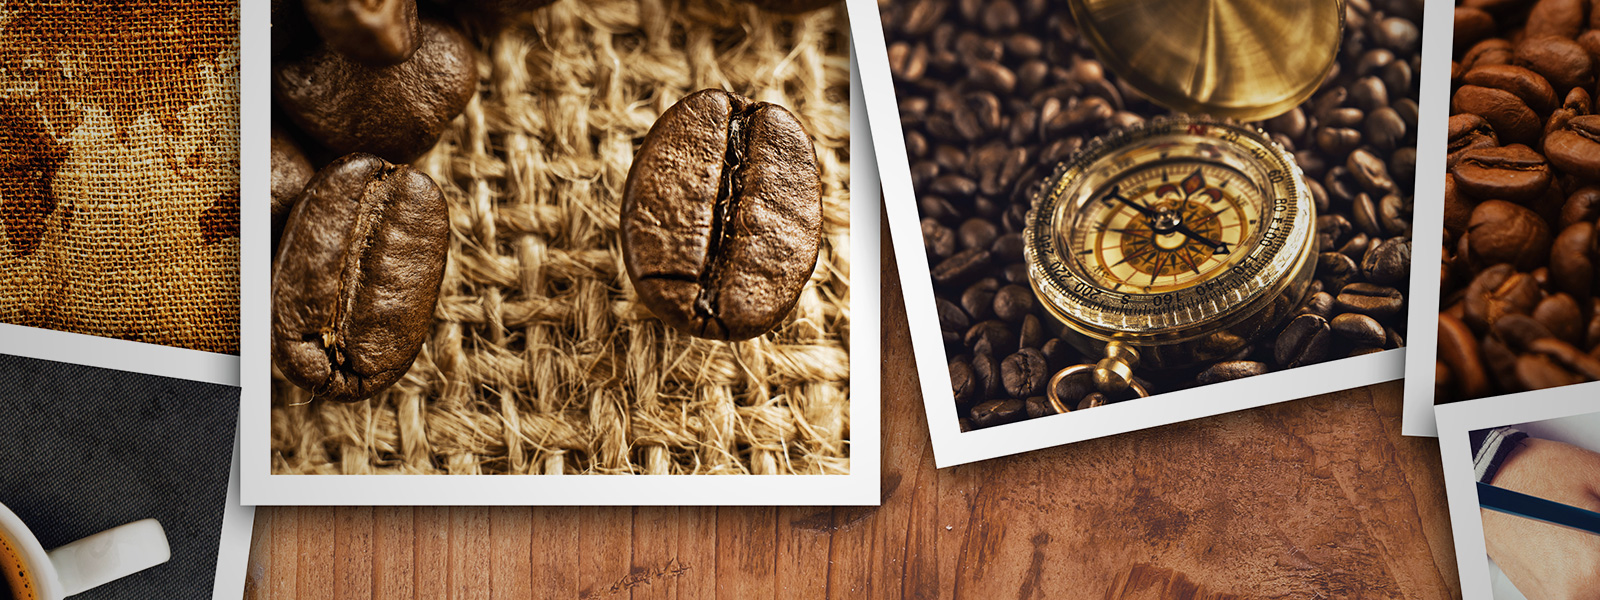 Il tuo caffè personalizzato dai migliori monorigine. Caffè in grani, caffè macinato e tostato fresco